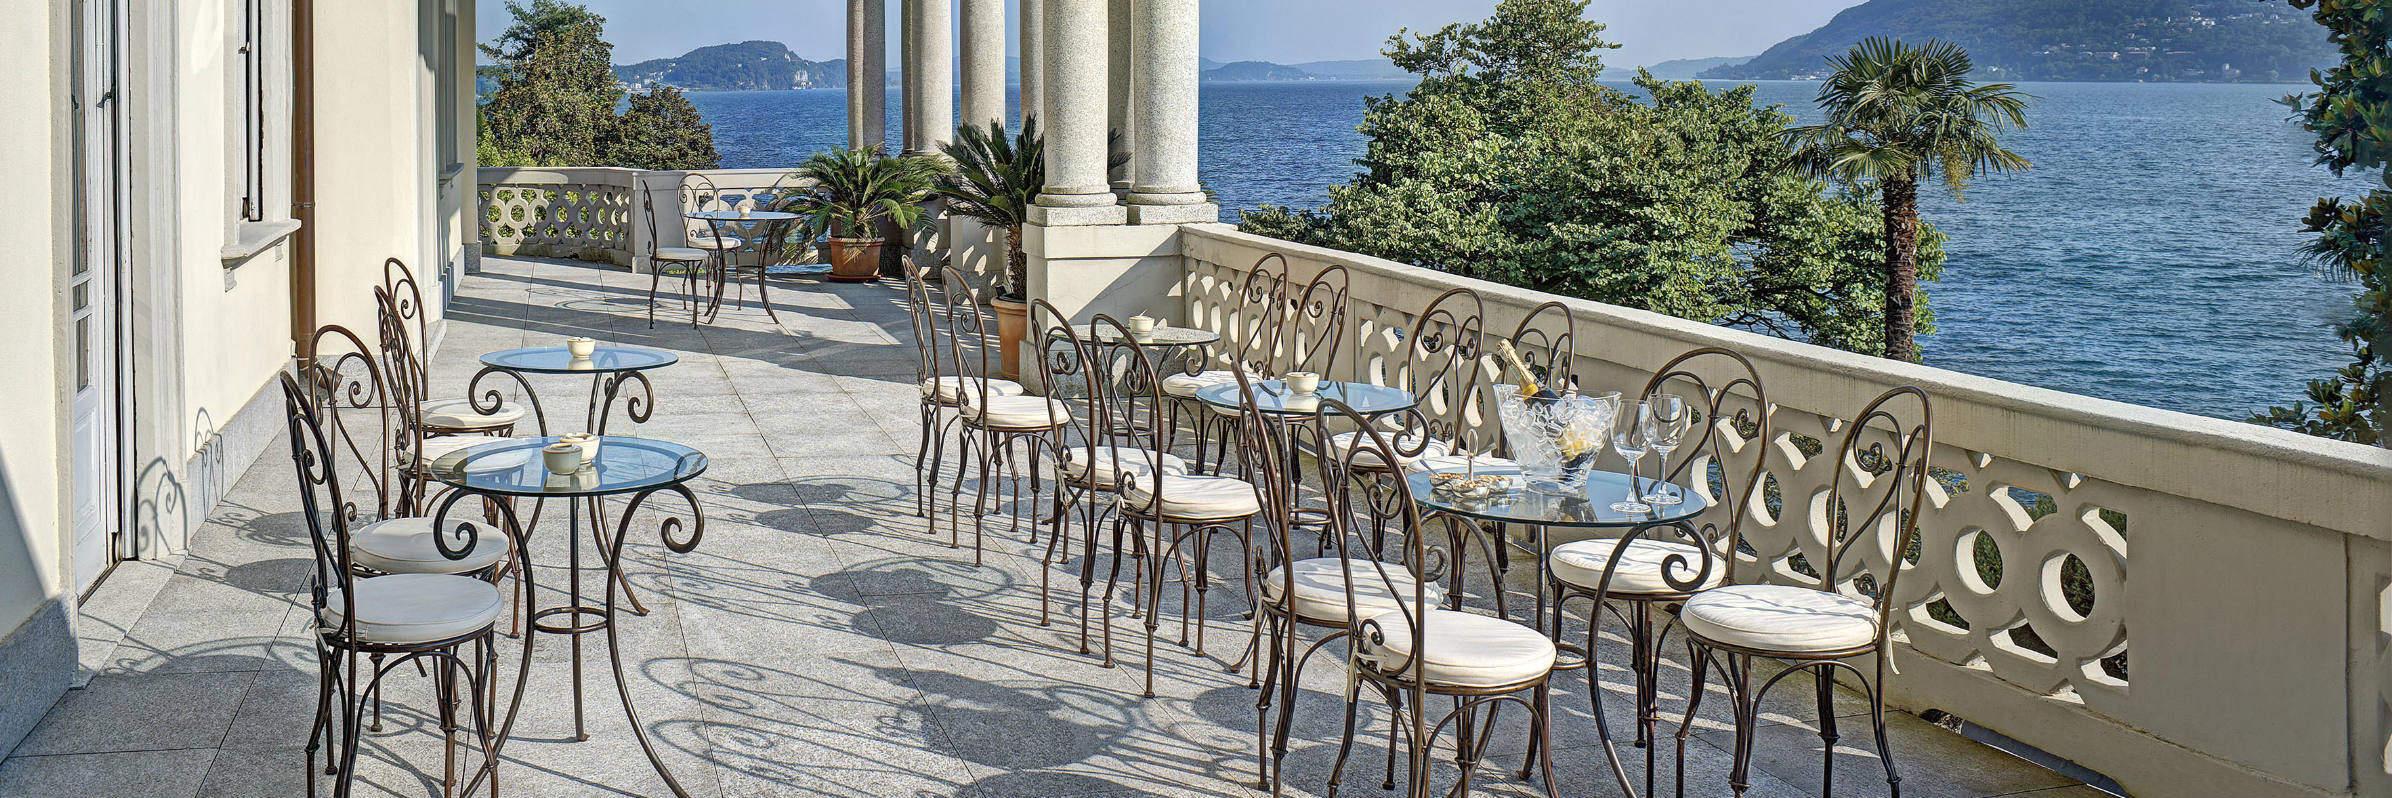 Grand Hotel Majestic, Lake Maggiore